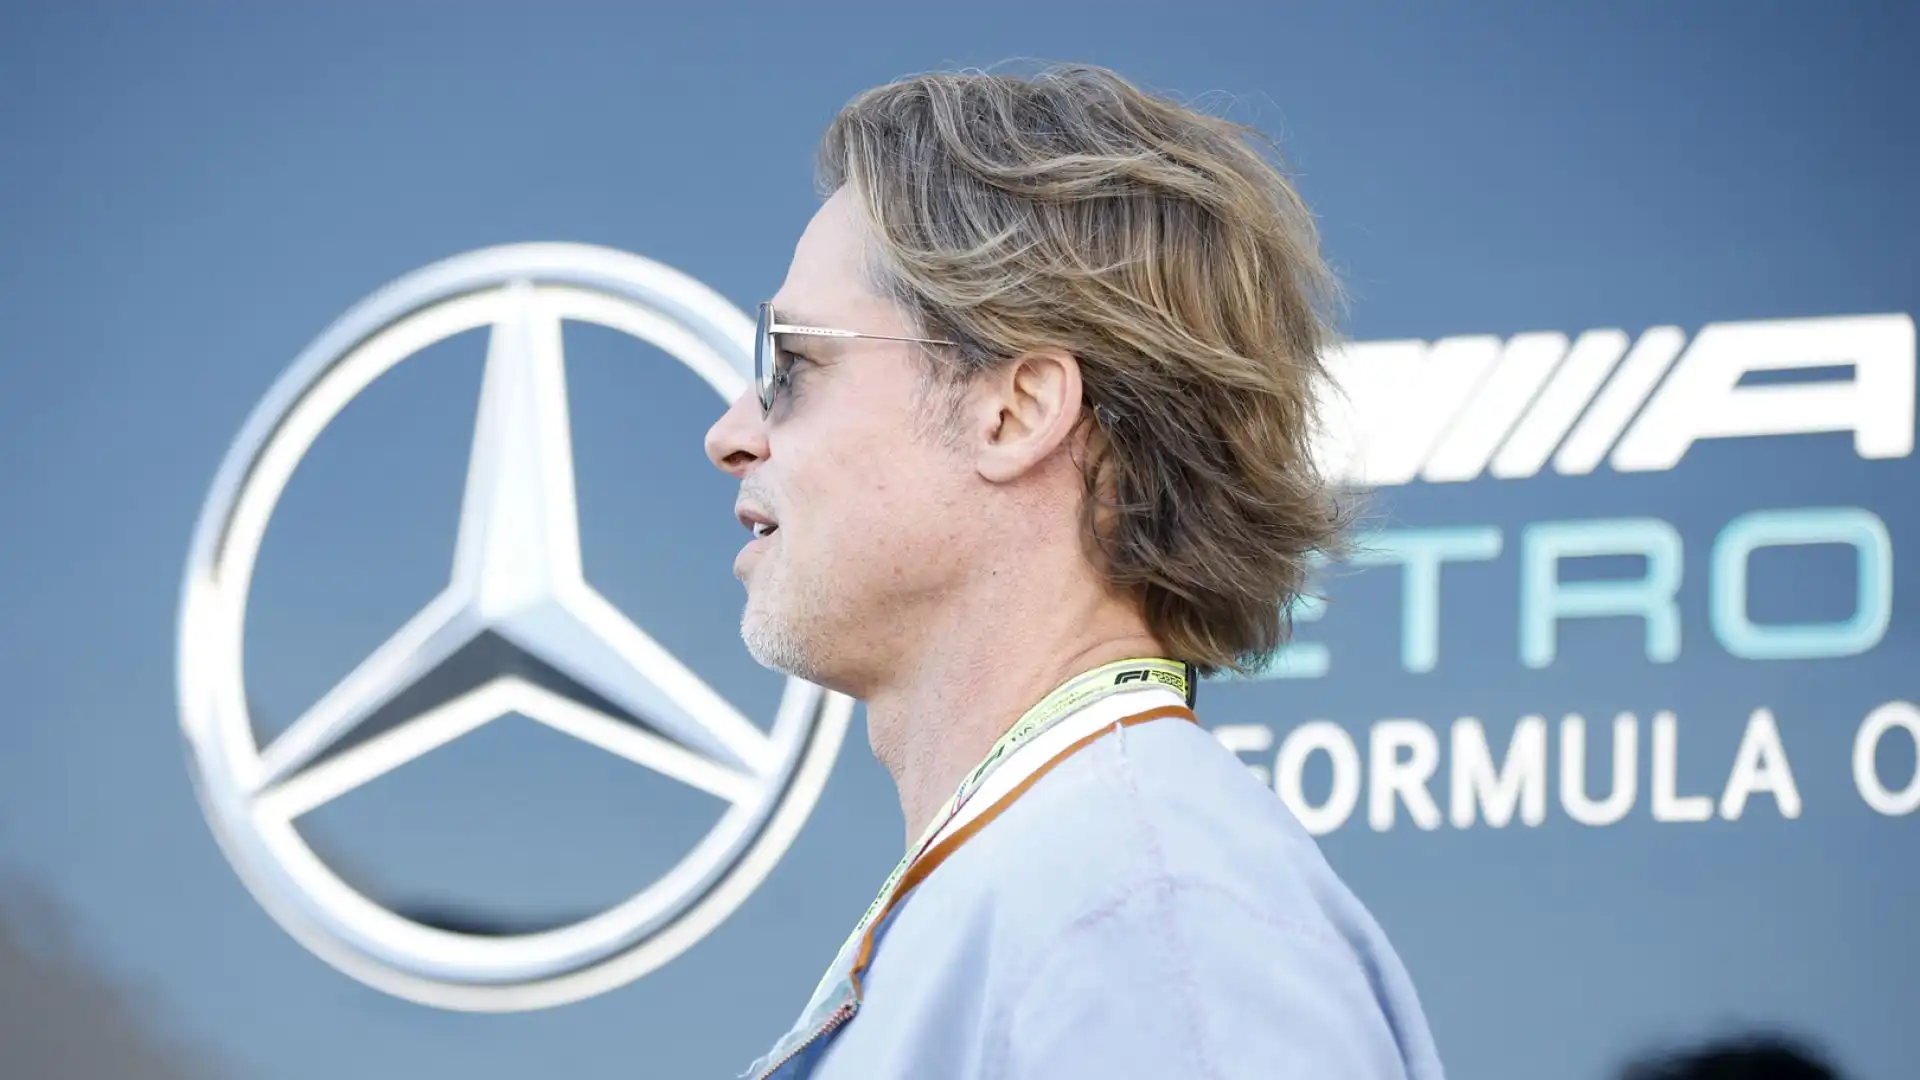 L'attore statunitense si è aggirato tra i box della Ferrari e della Mercedes